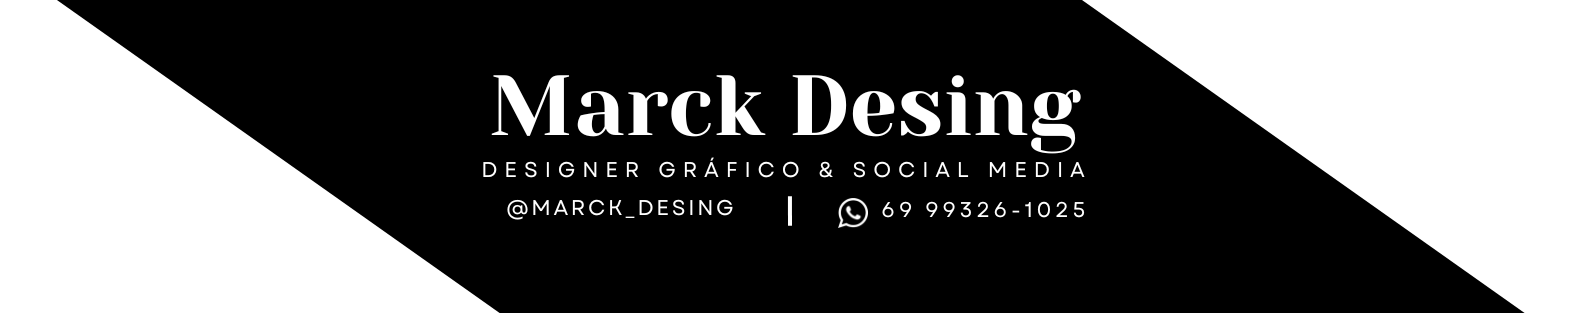 Marck Desing's profile banner